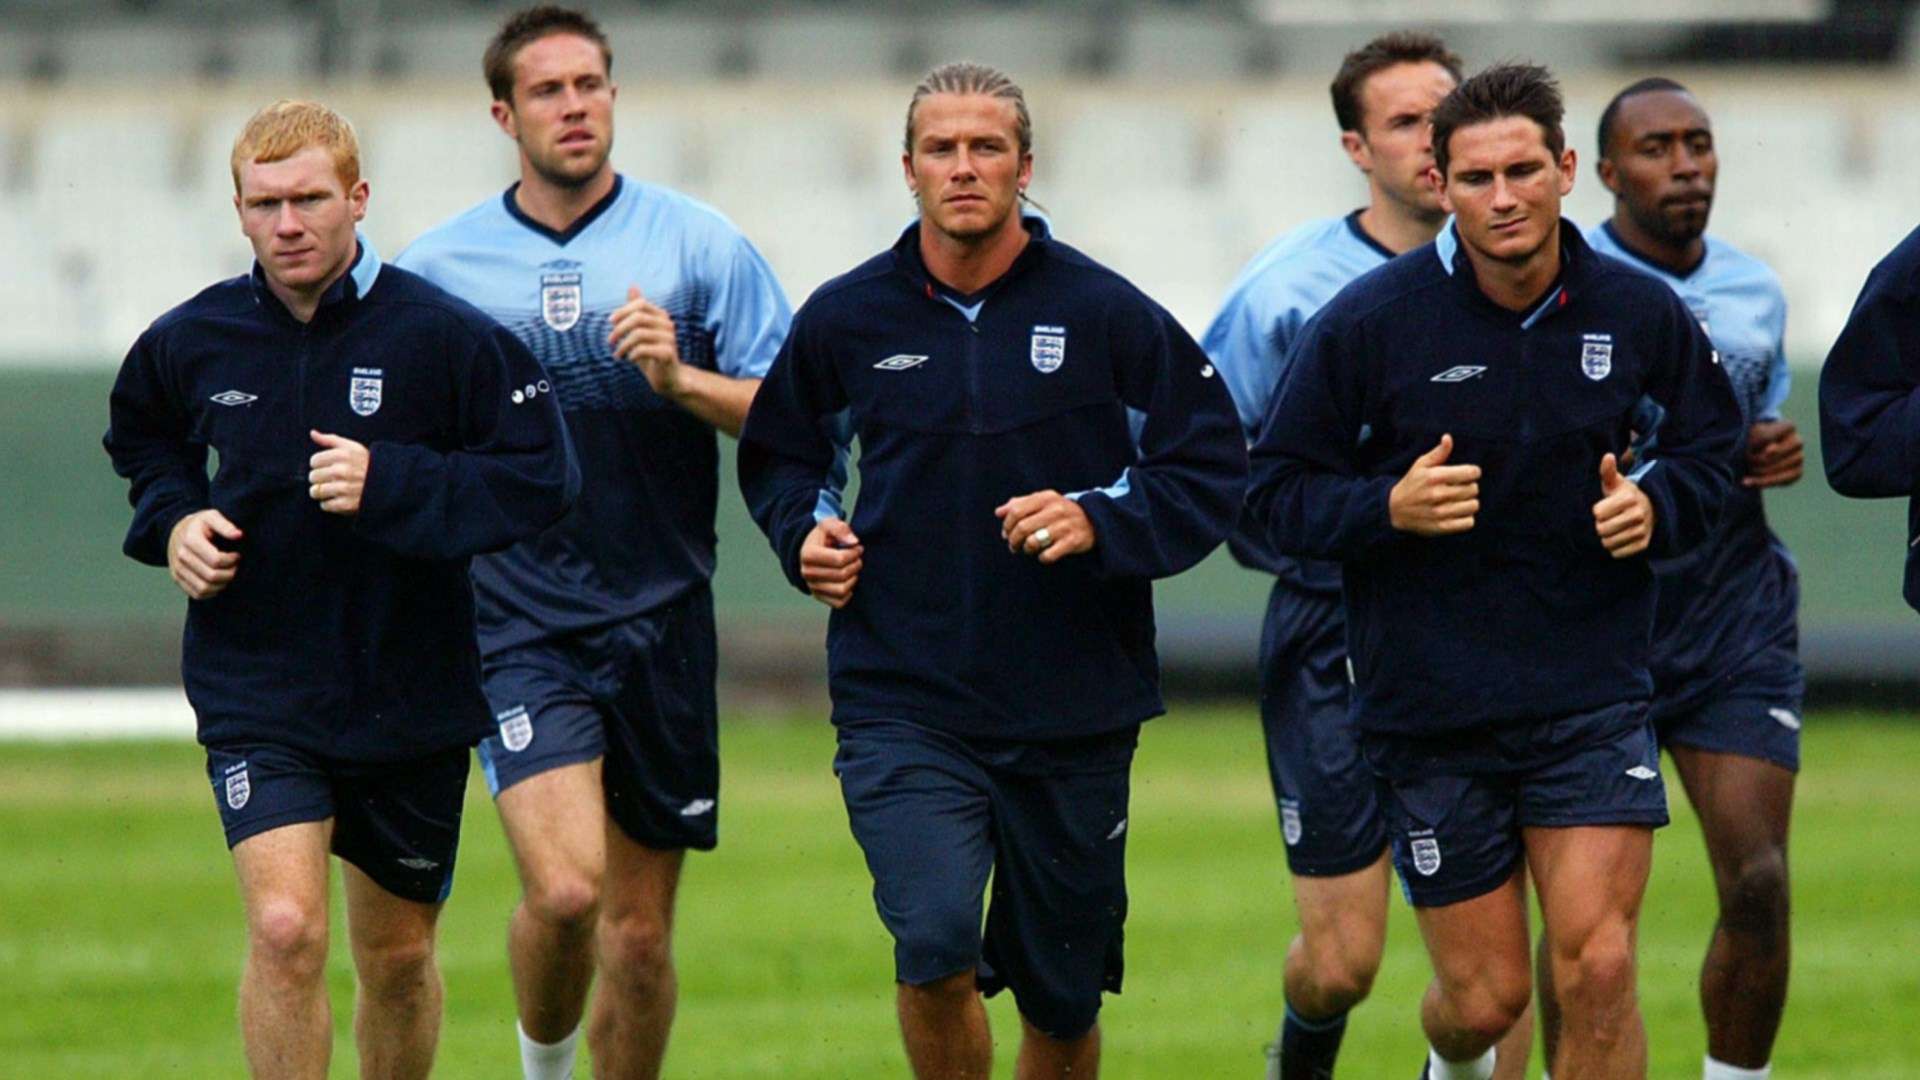 Lampard-Scholes-Beckham-England